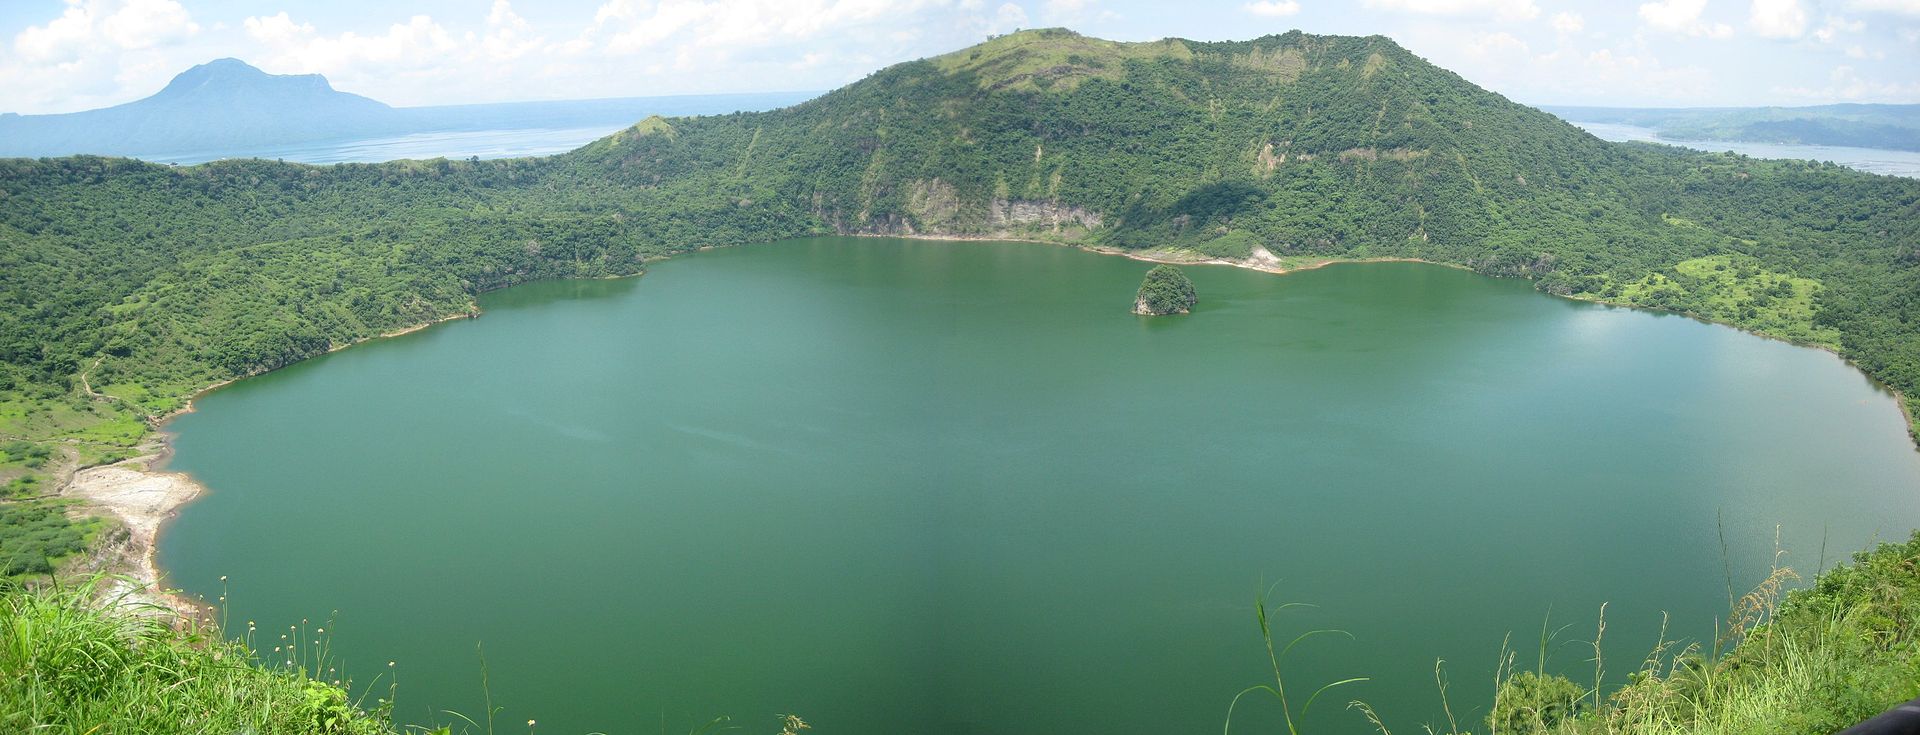 В Филиппинах остров с озером